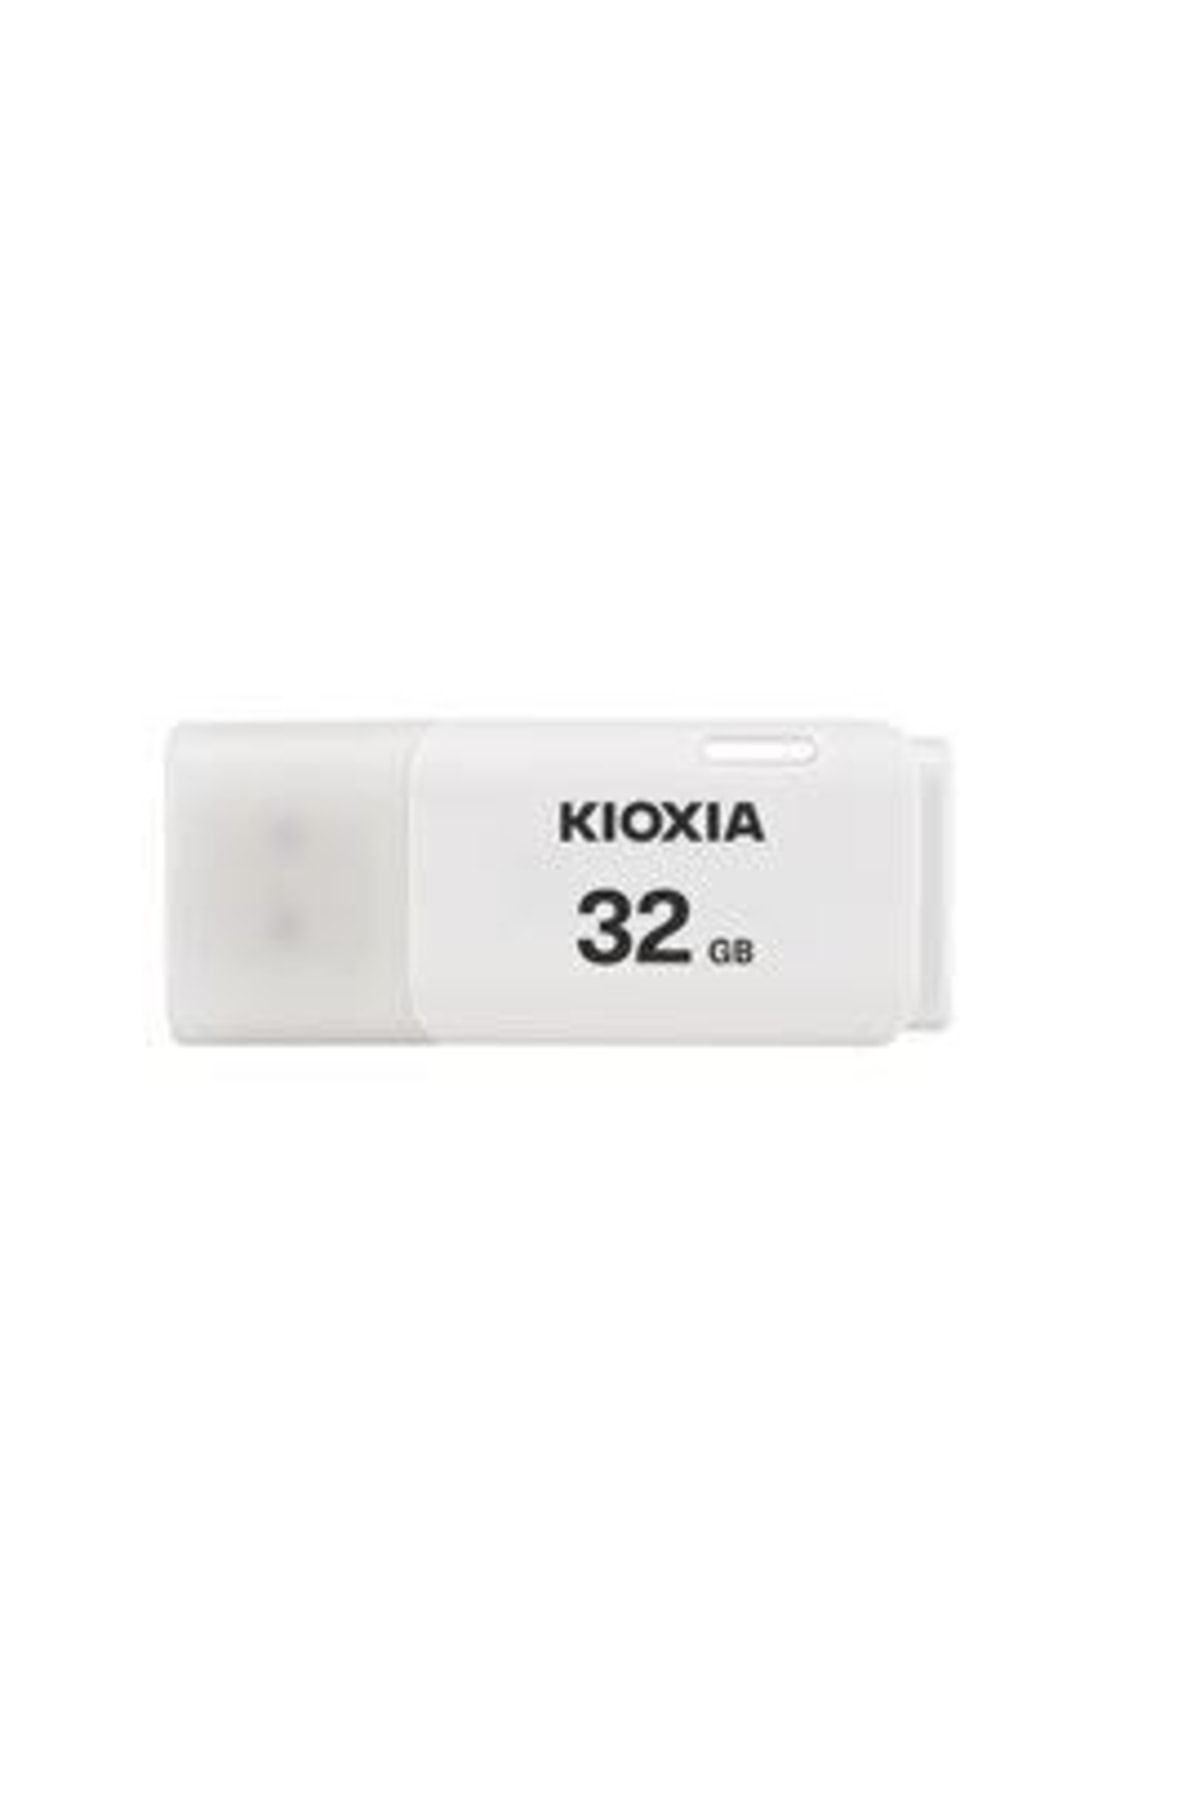 Kioxia 32 Gb Kıoxıa U202 Usb2.0 Beyaz Lu202w032gg4